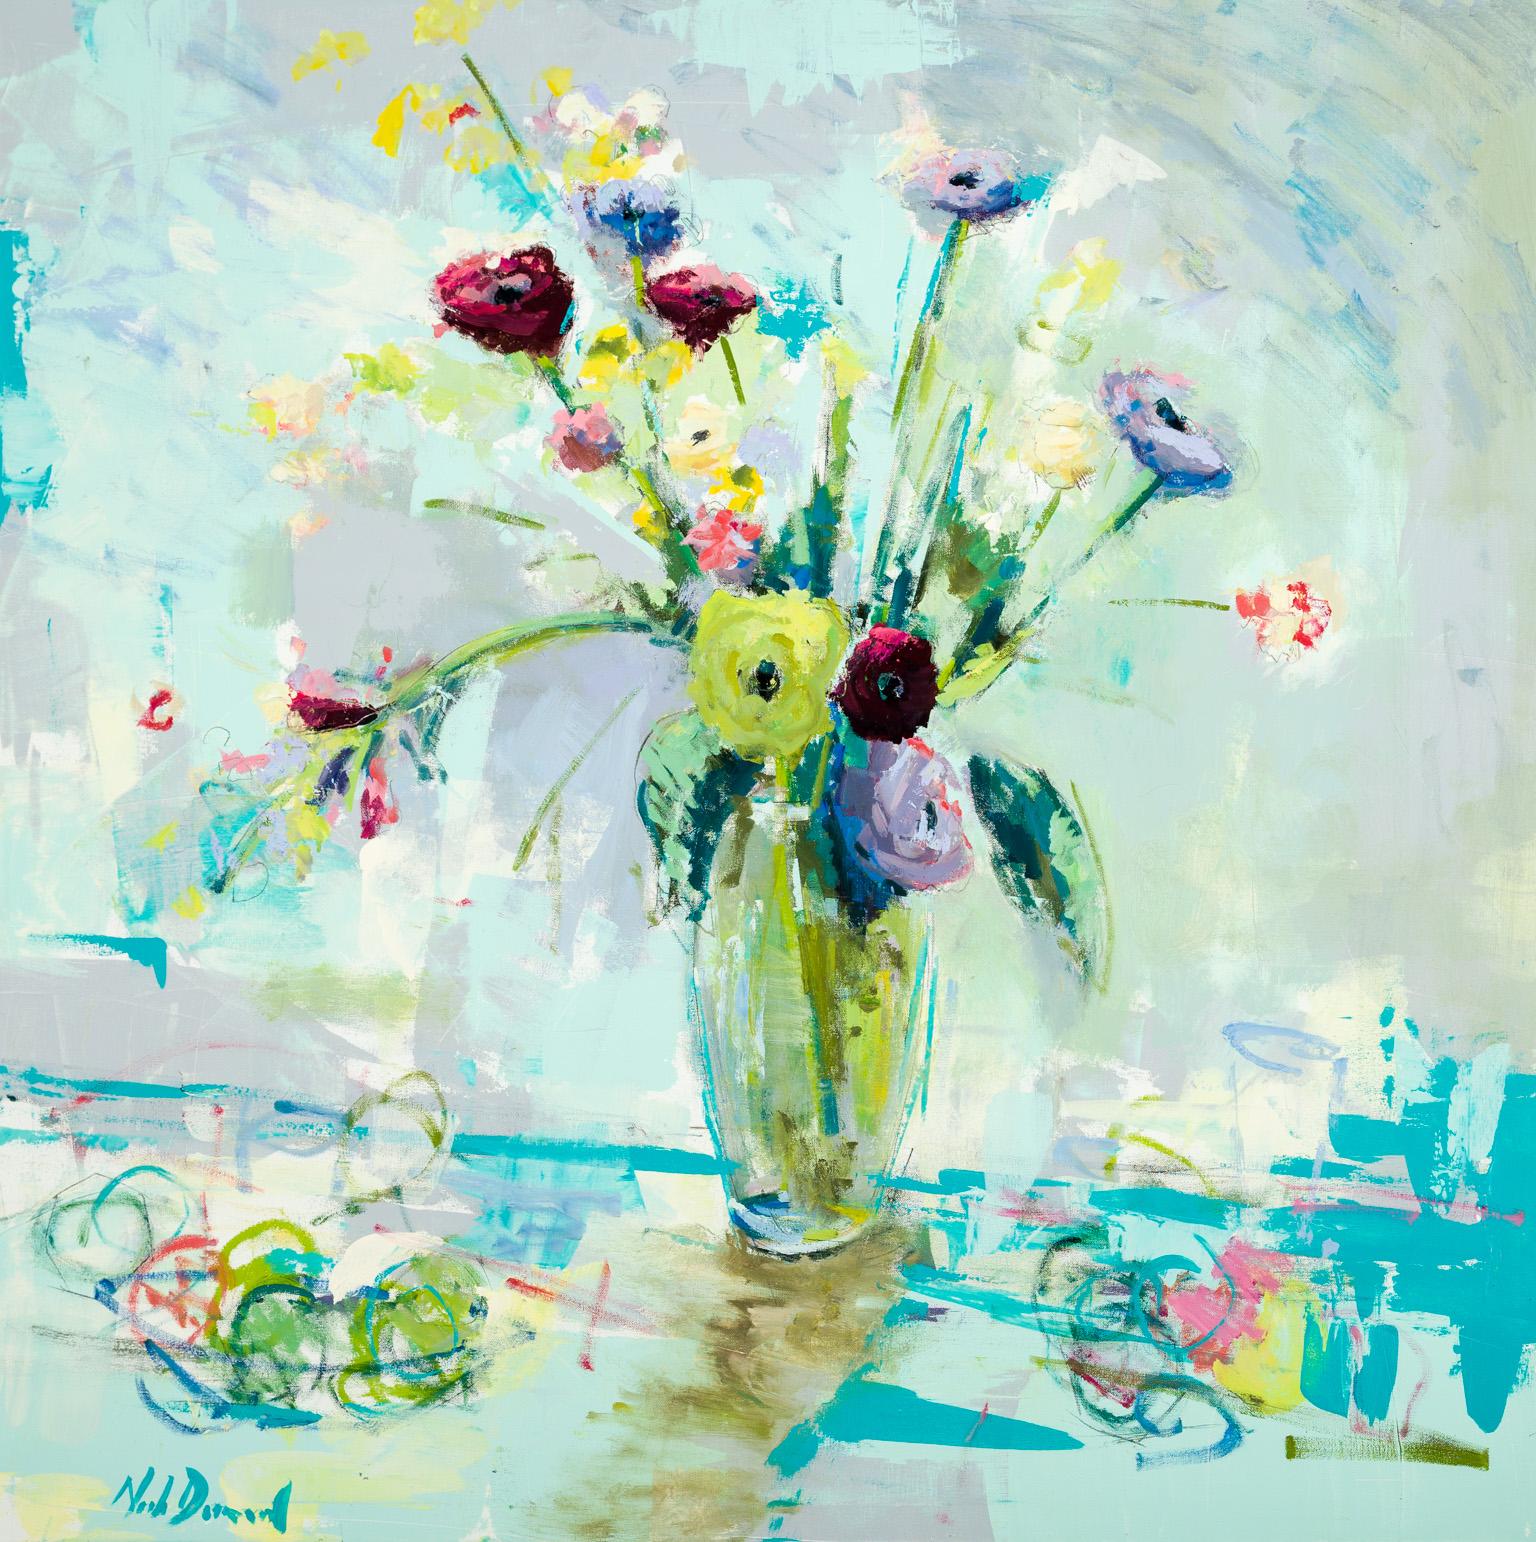 Venice Flowers - Painting by Noah Desmond